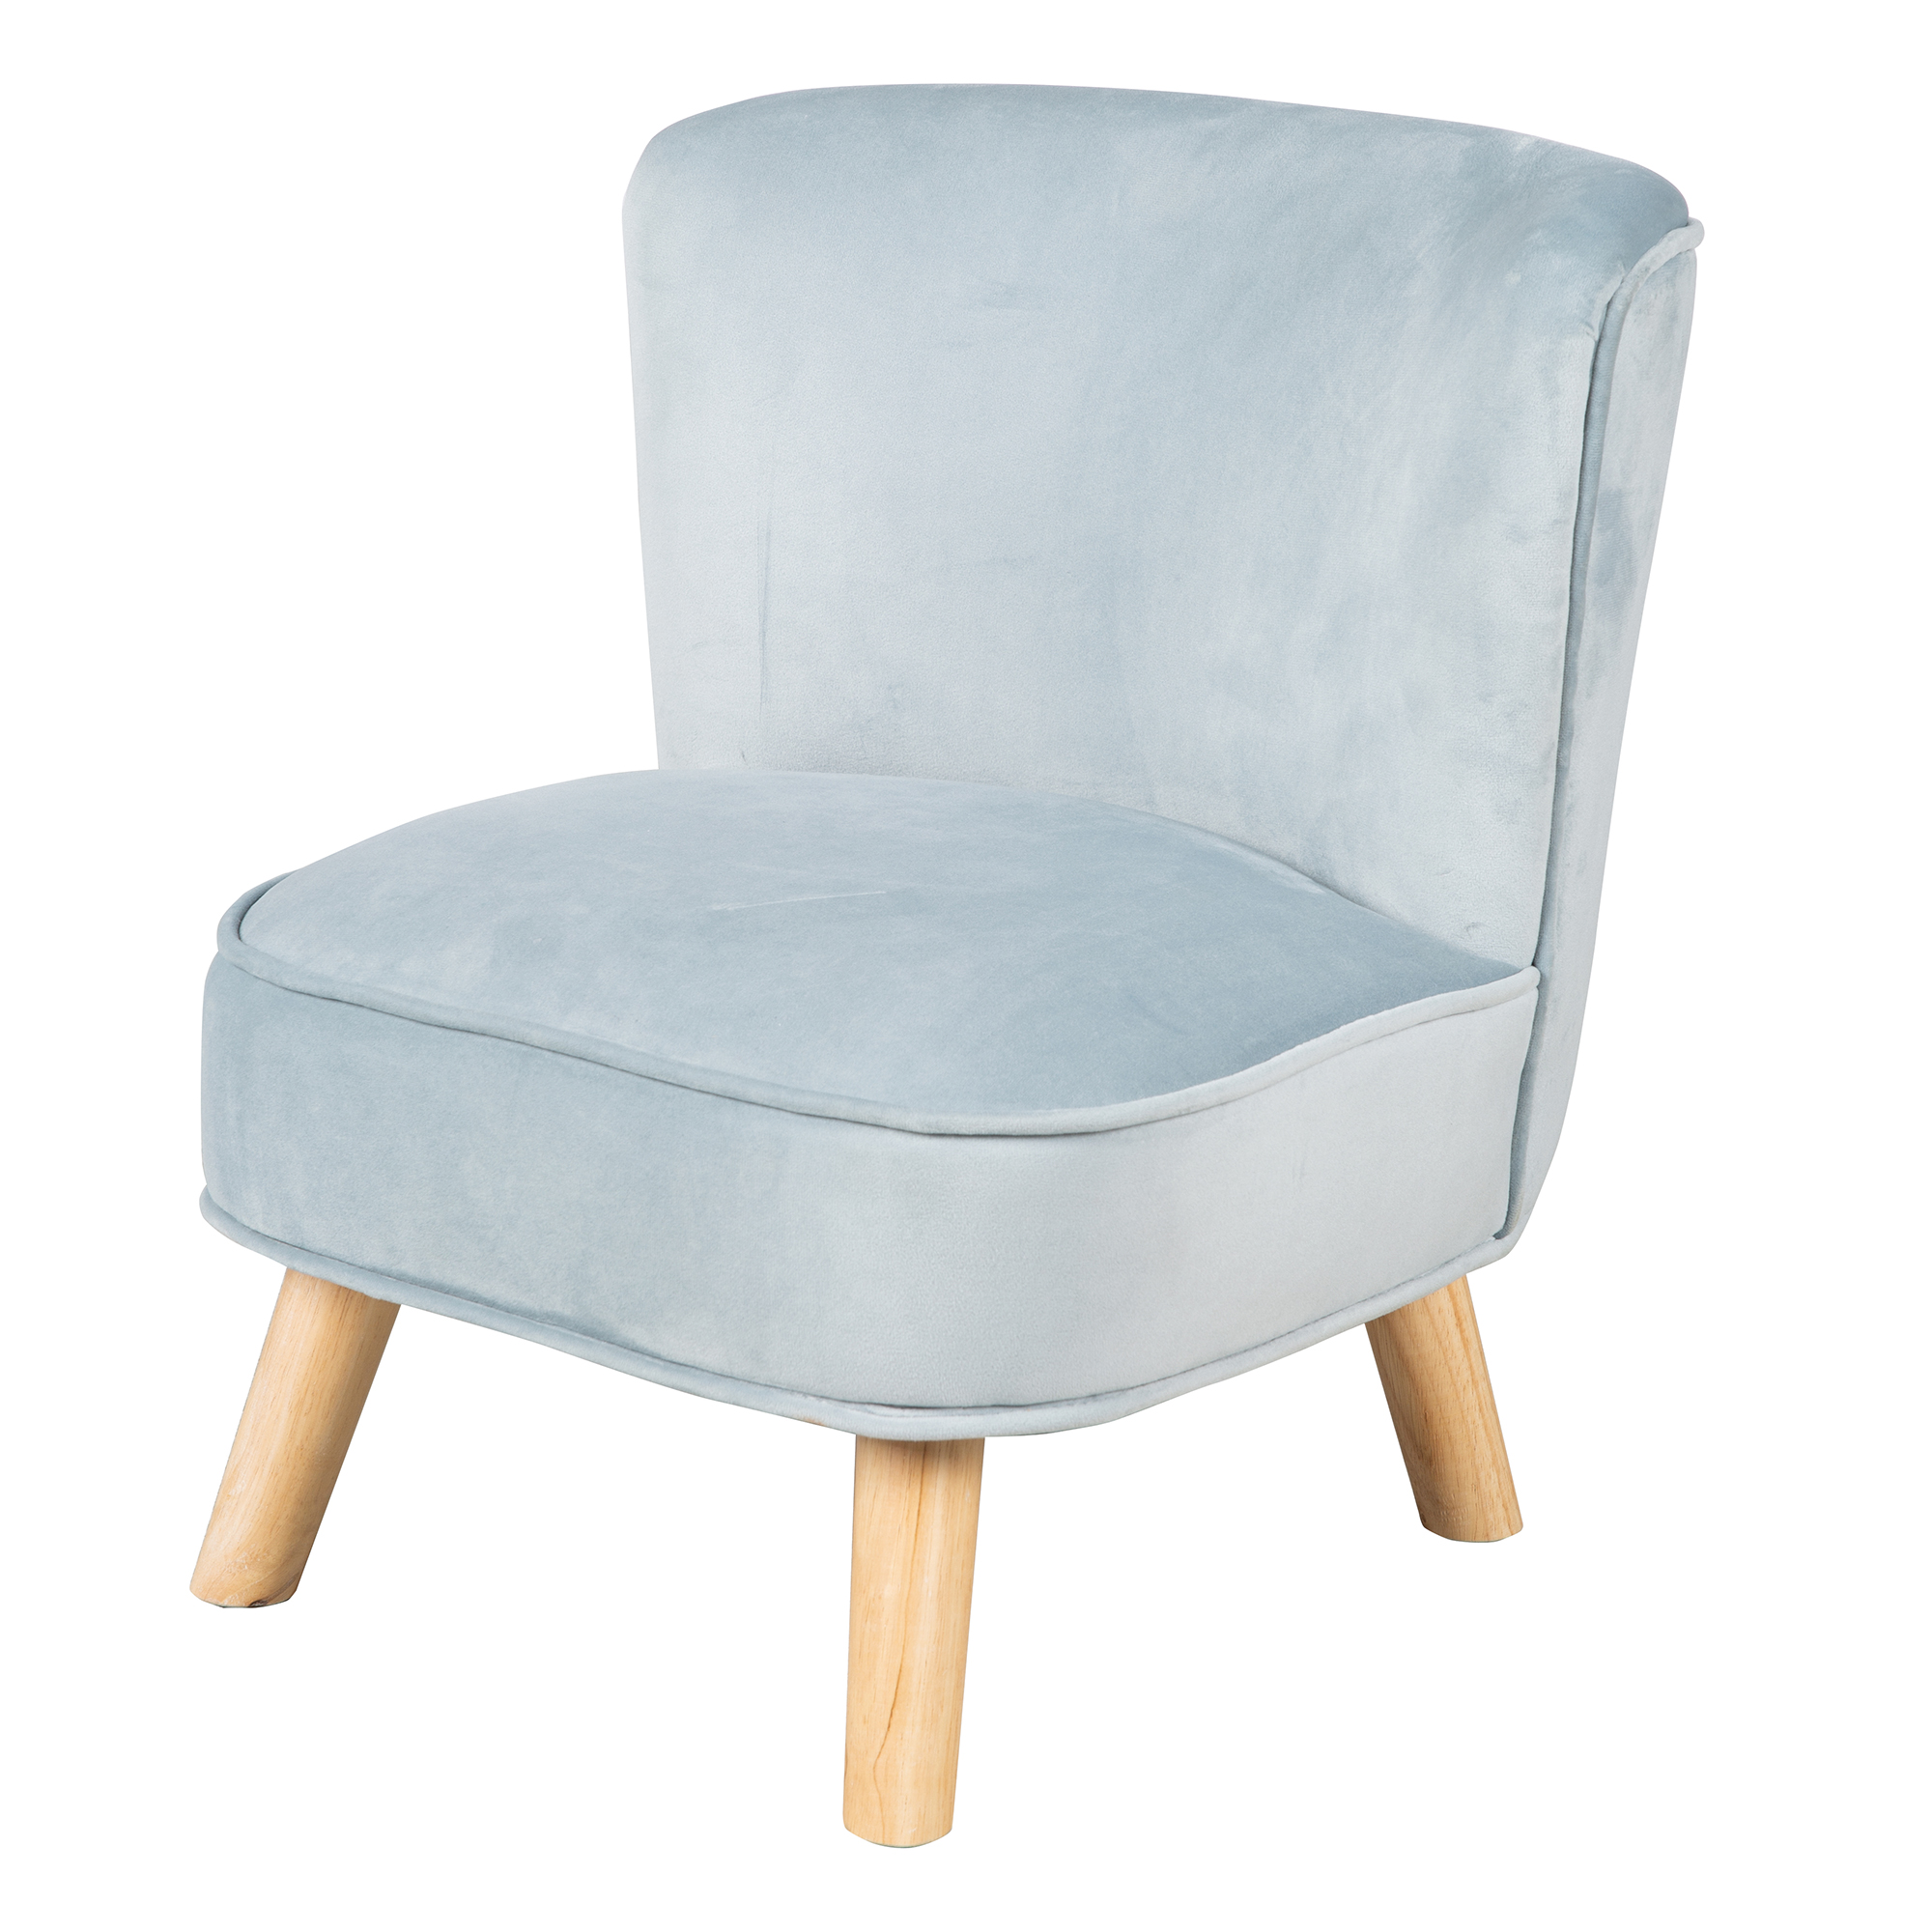 Кресло детское Roba мягкое велюровое на деревянных ножках Lil Sofa, голубой roba комплект детской мебели rock star baby стол два стульчика